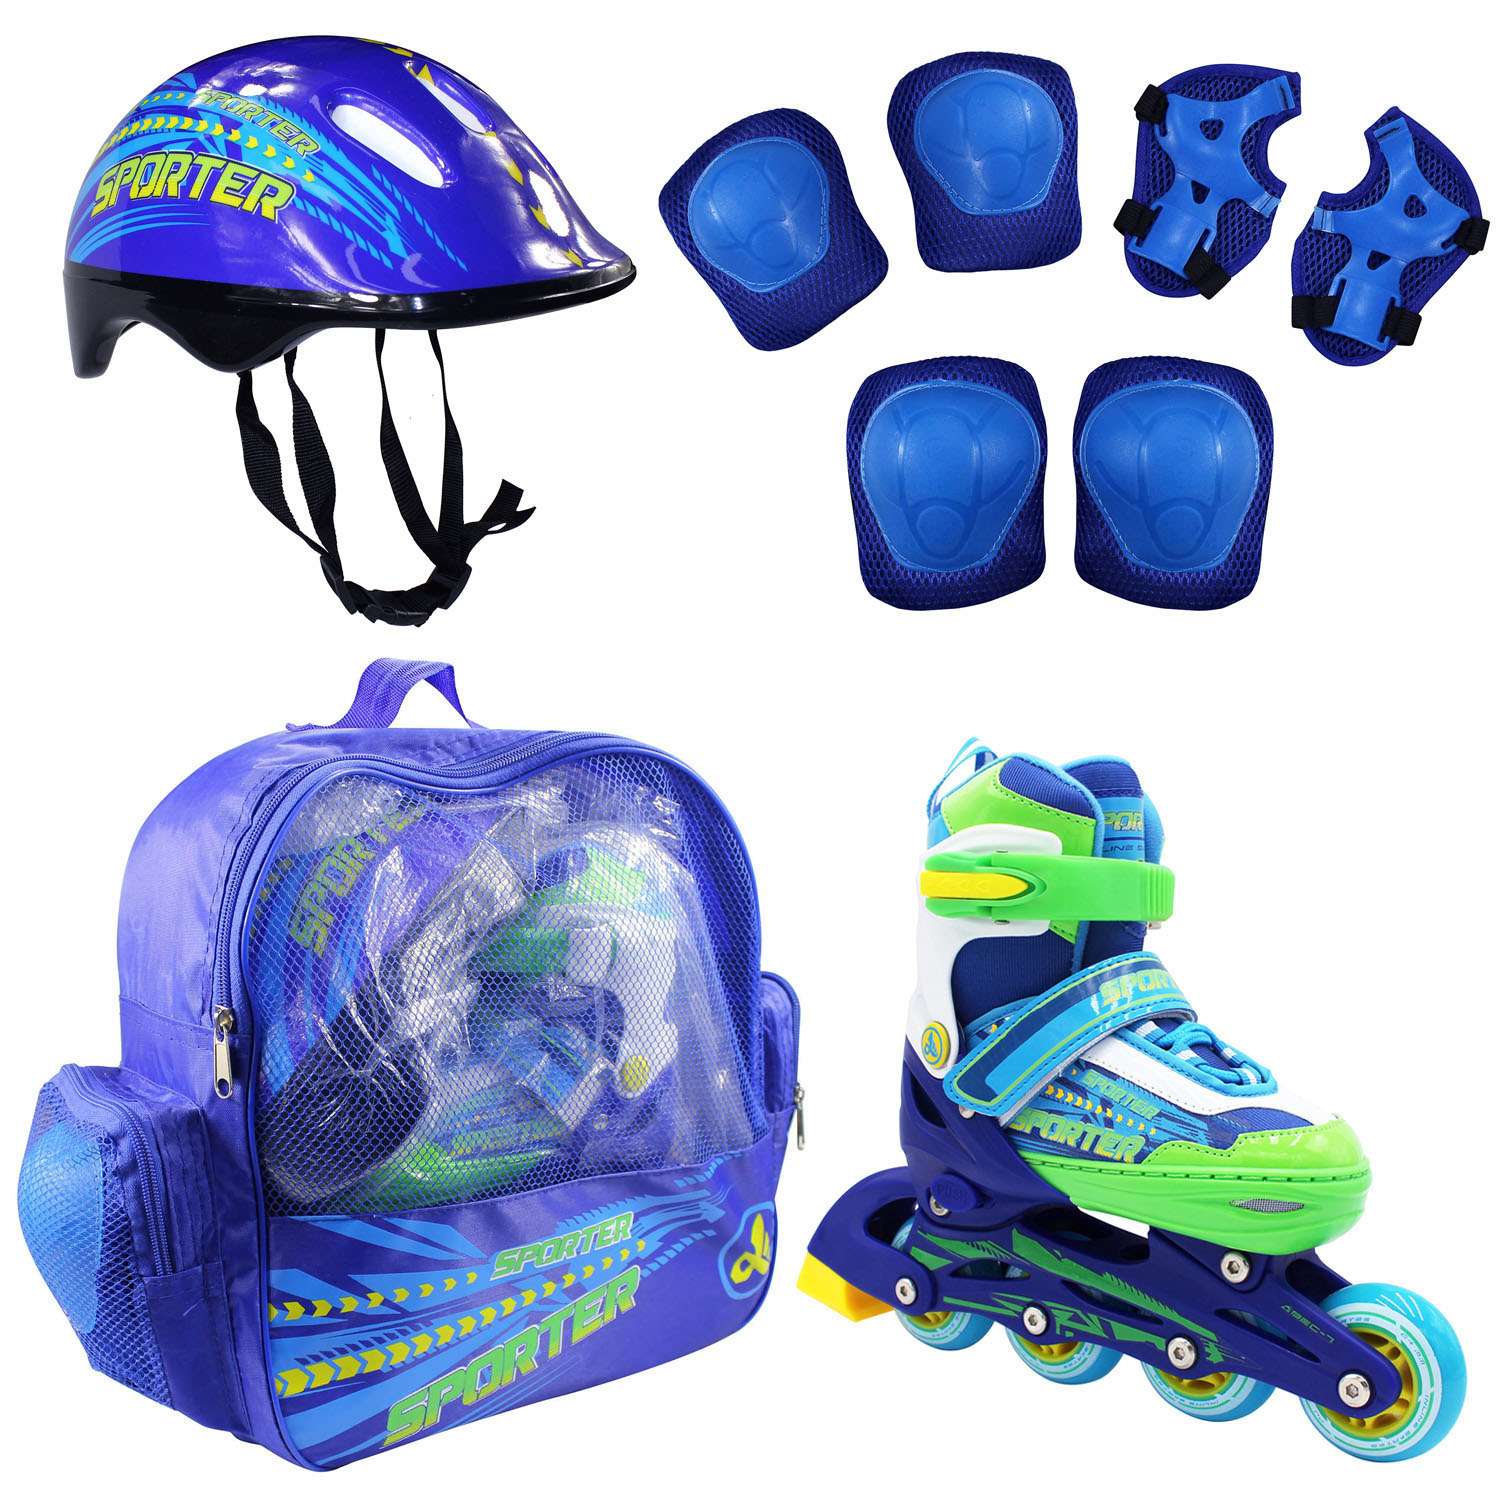 Набор роликовые коньки Alpha Caprice раздвижные Sporter Blue шлем и набор защиты в сумке размер M 35-38 - фото 1